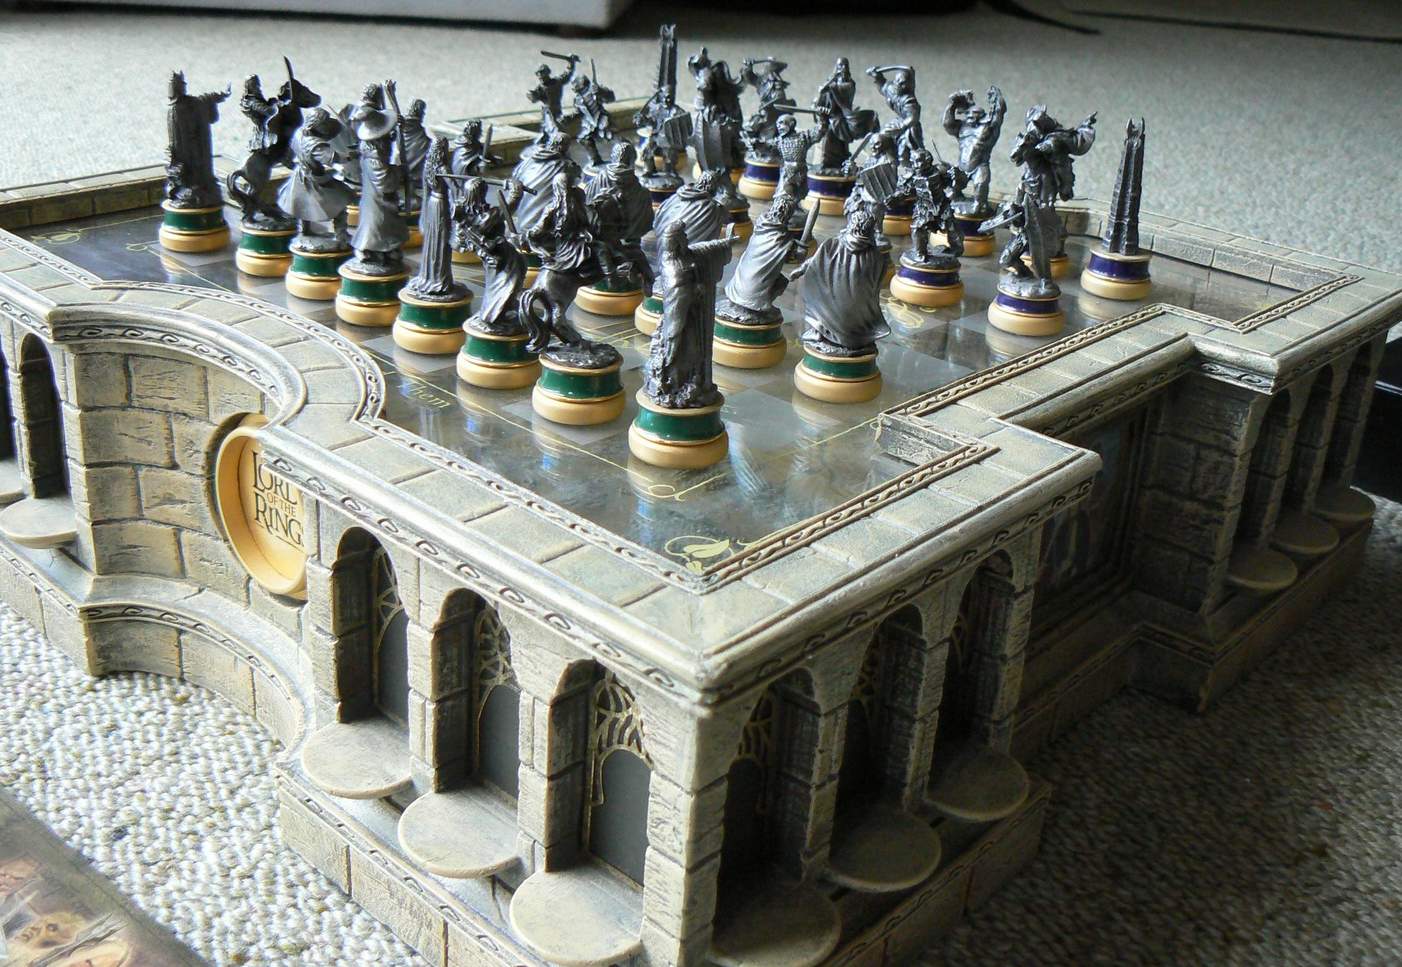 Pin de Amanda Freire em Frases  Jogo de xadrez, Ditados, Jogos